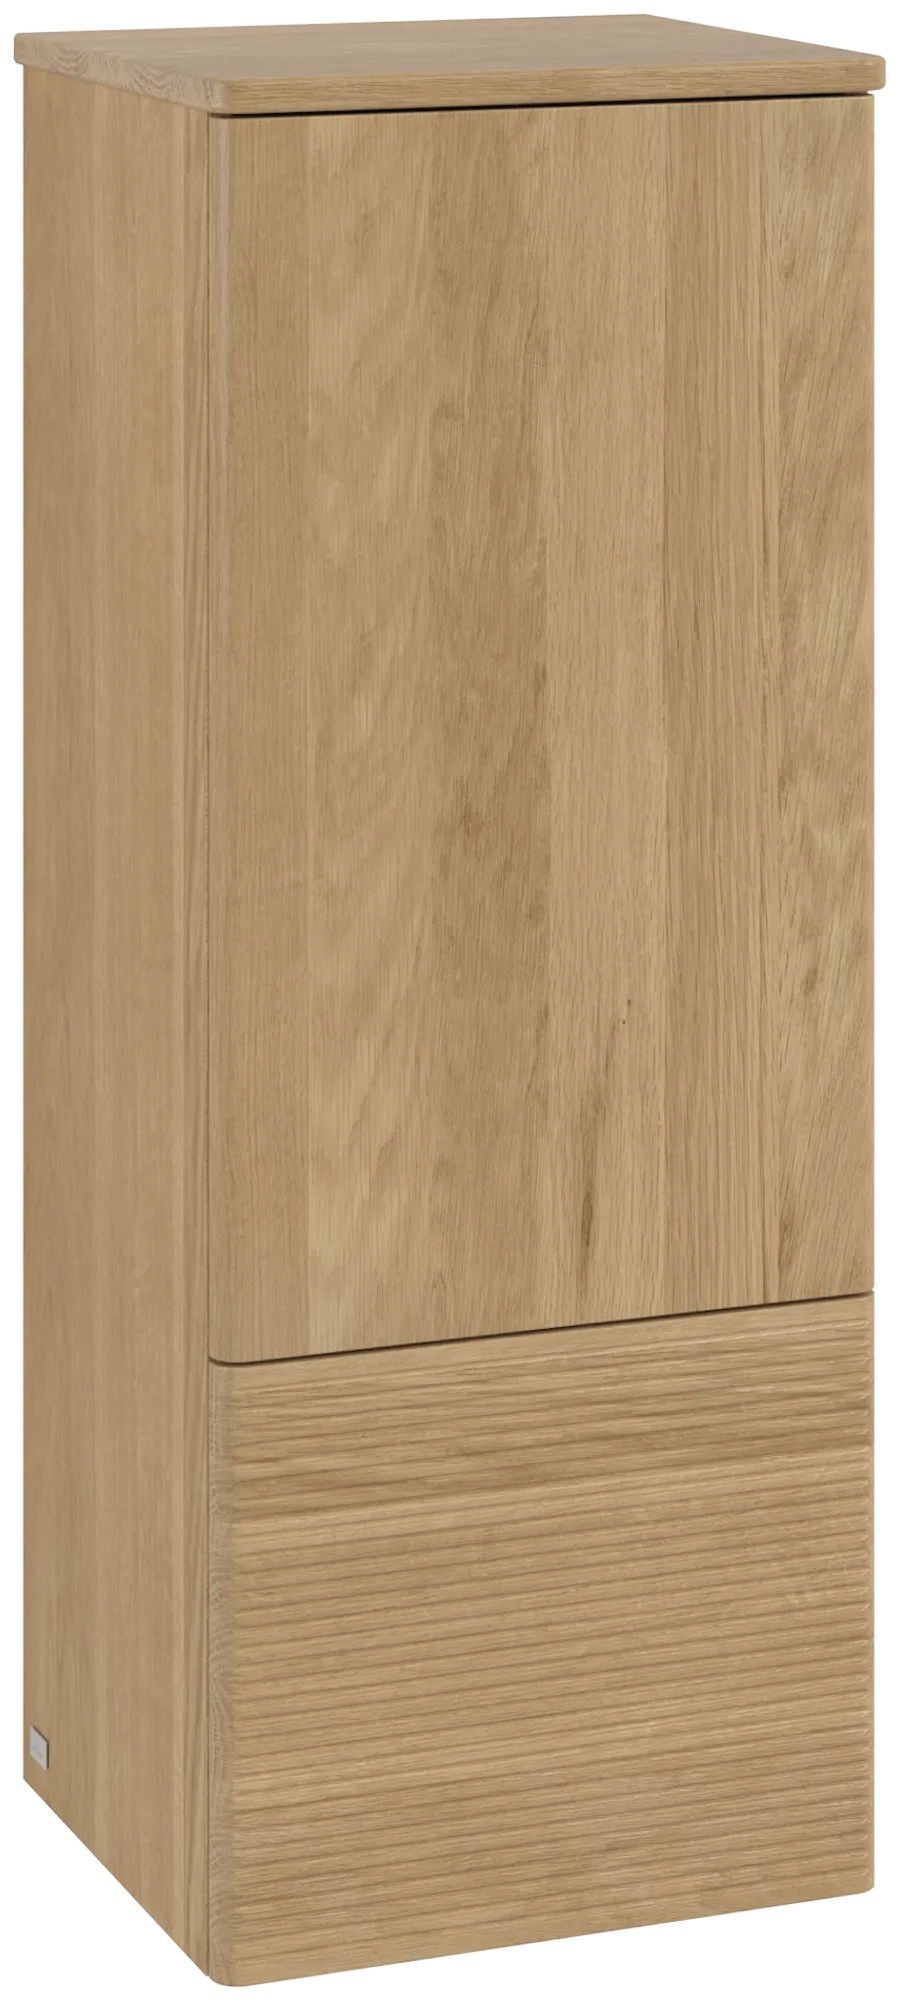 Picture of VILLEROY BOCH Antao Medium-height cabinet, 1 door, 414 x 1039 x 356 mm, Front with grain texture, Honey Oak / Honey Oak #K44100HN